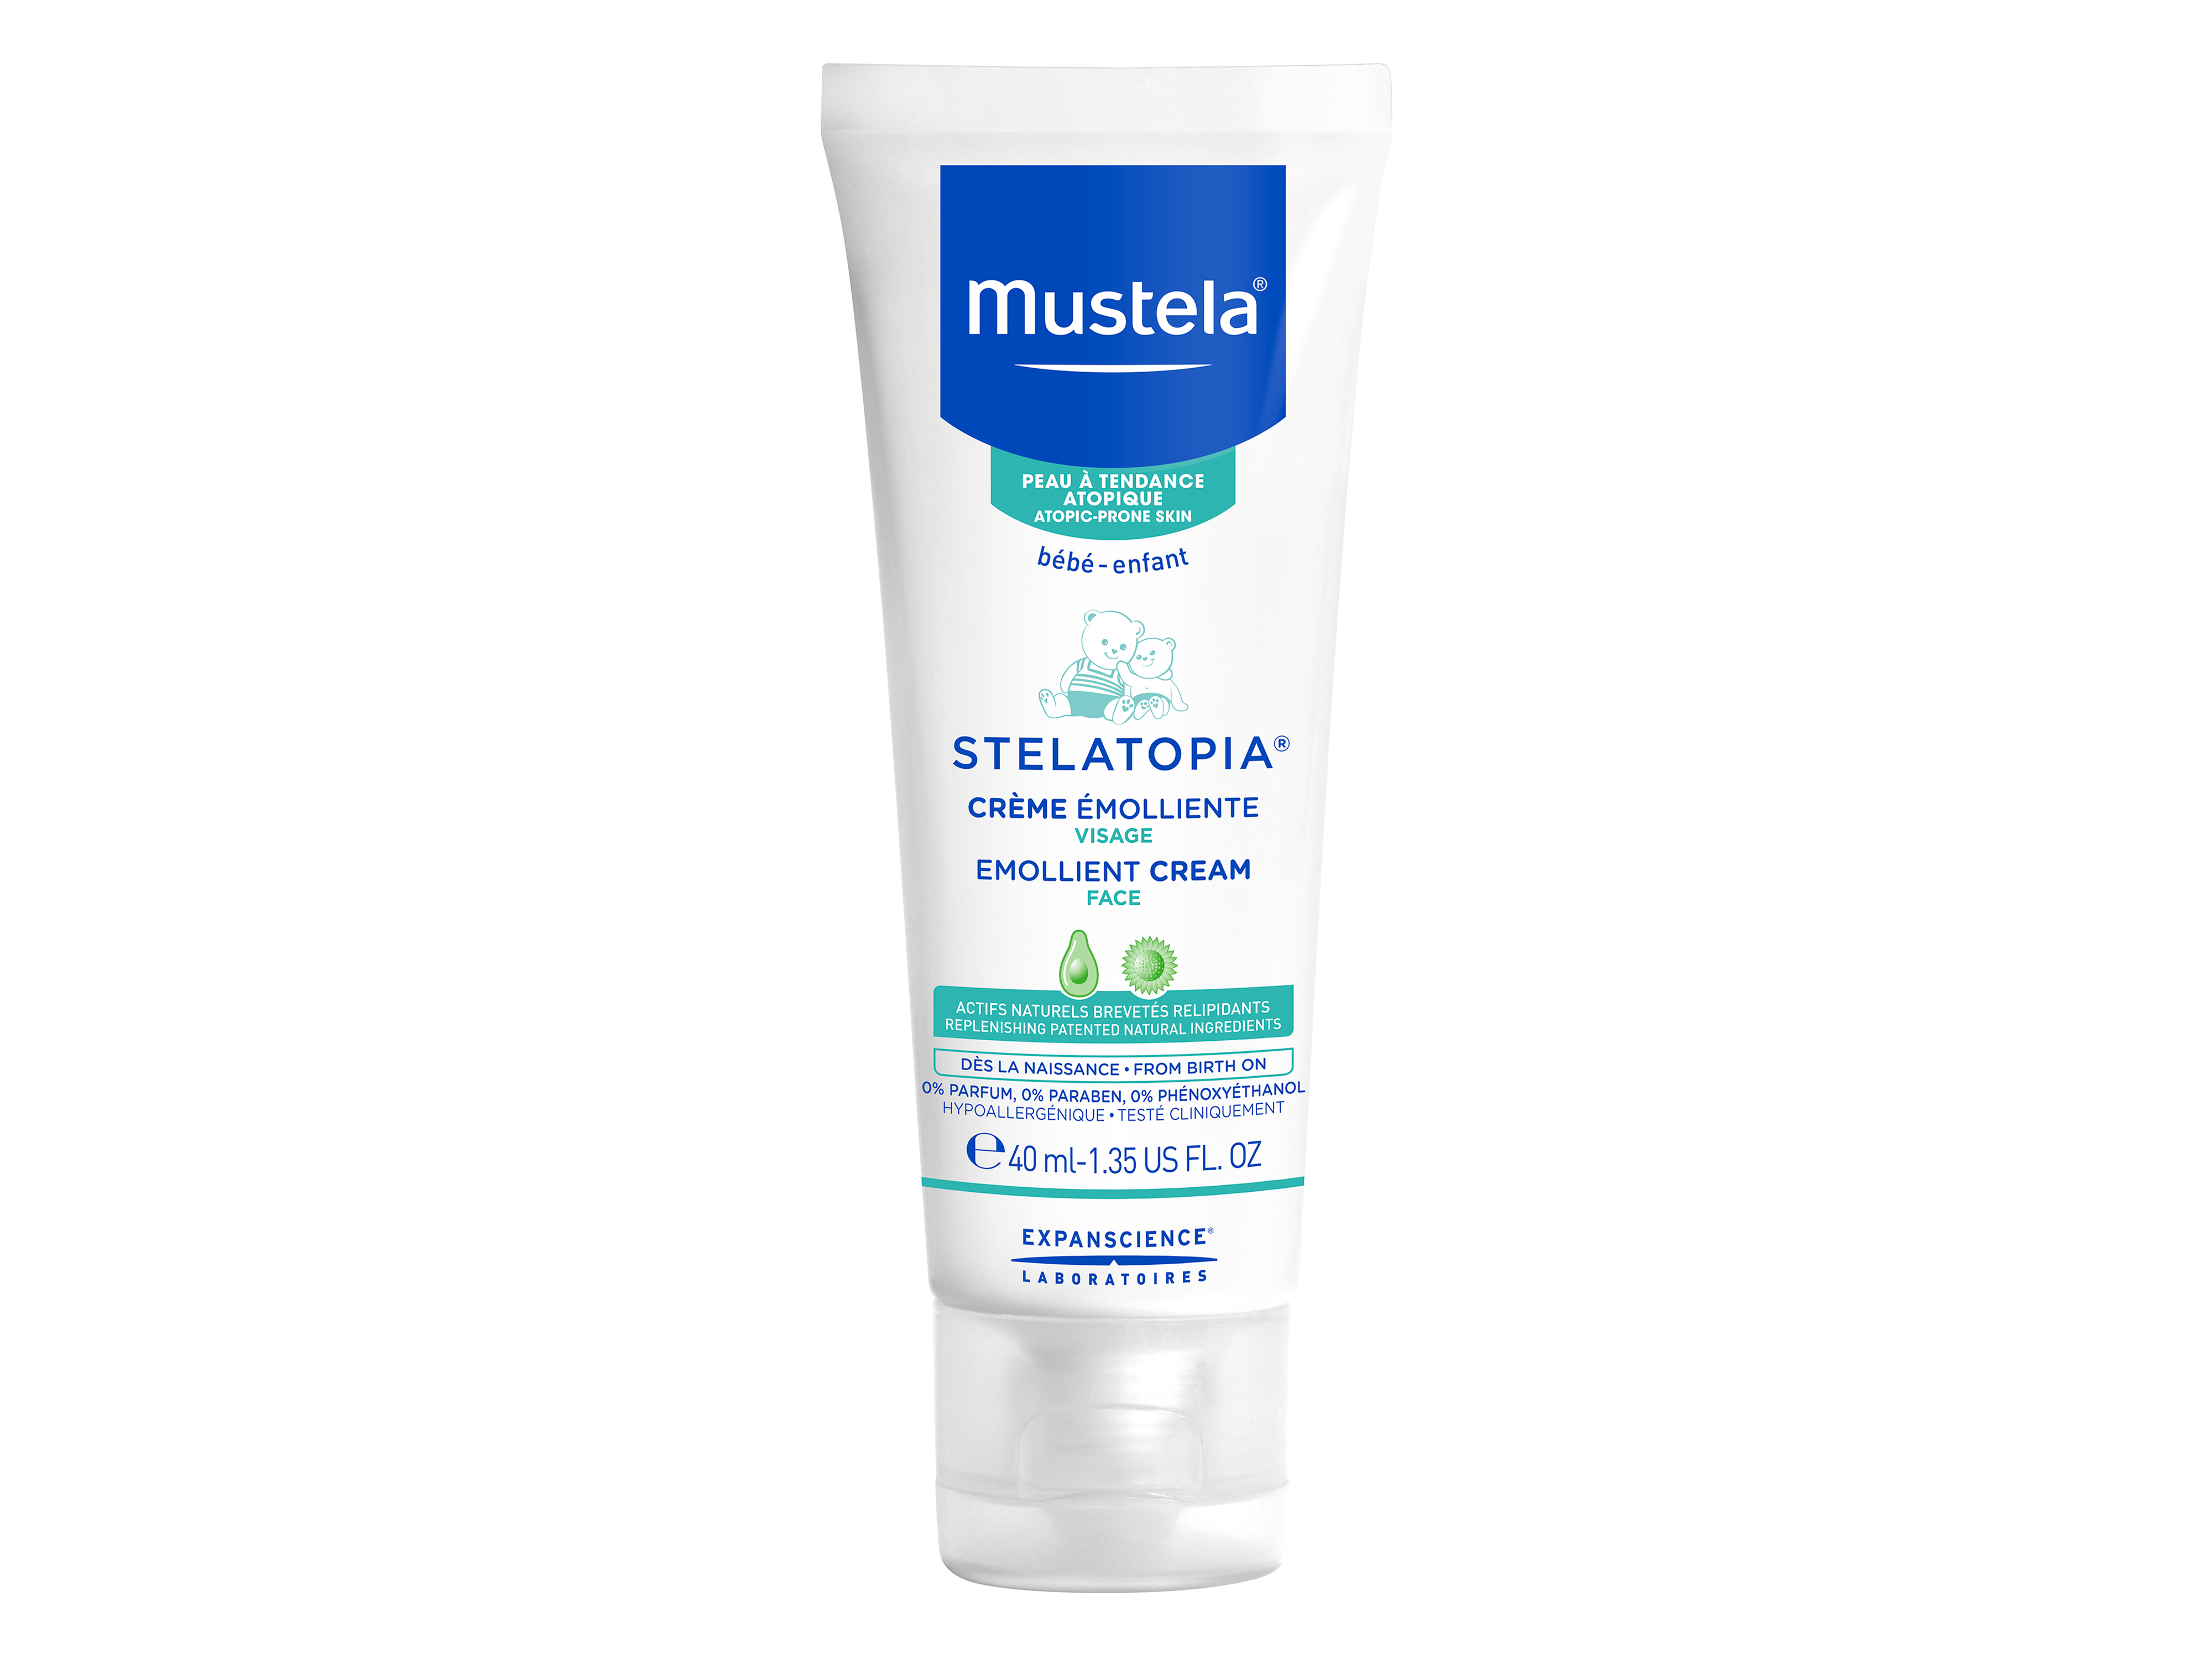 Mustela Stelatopia Emollient Cream Face, 40 ml